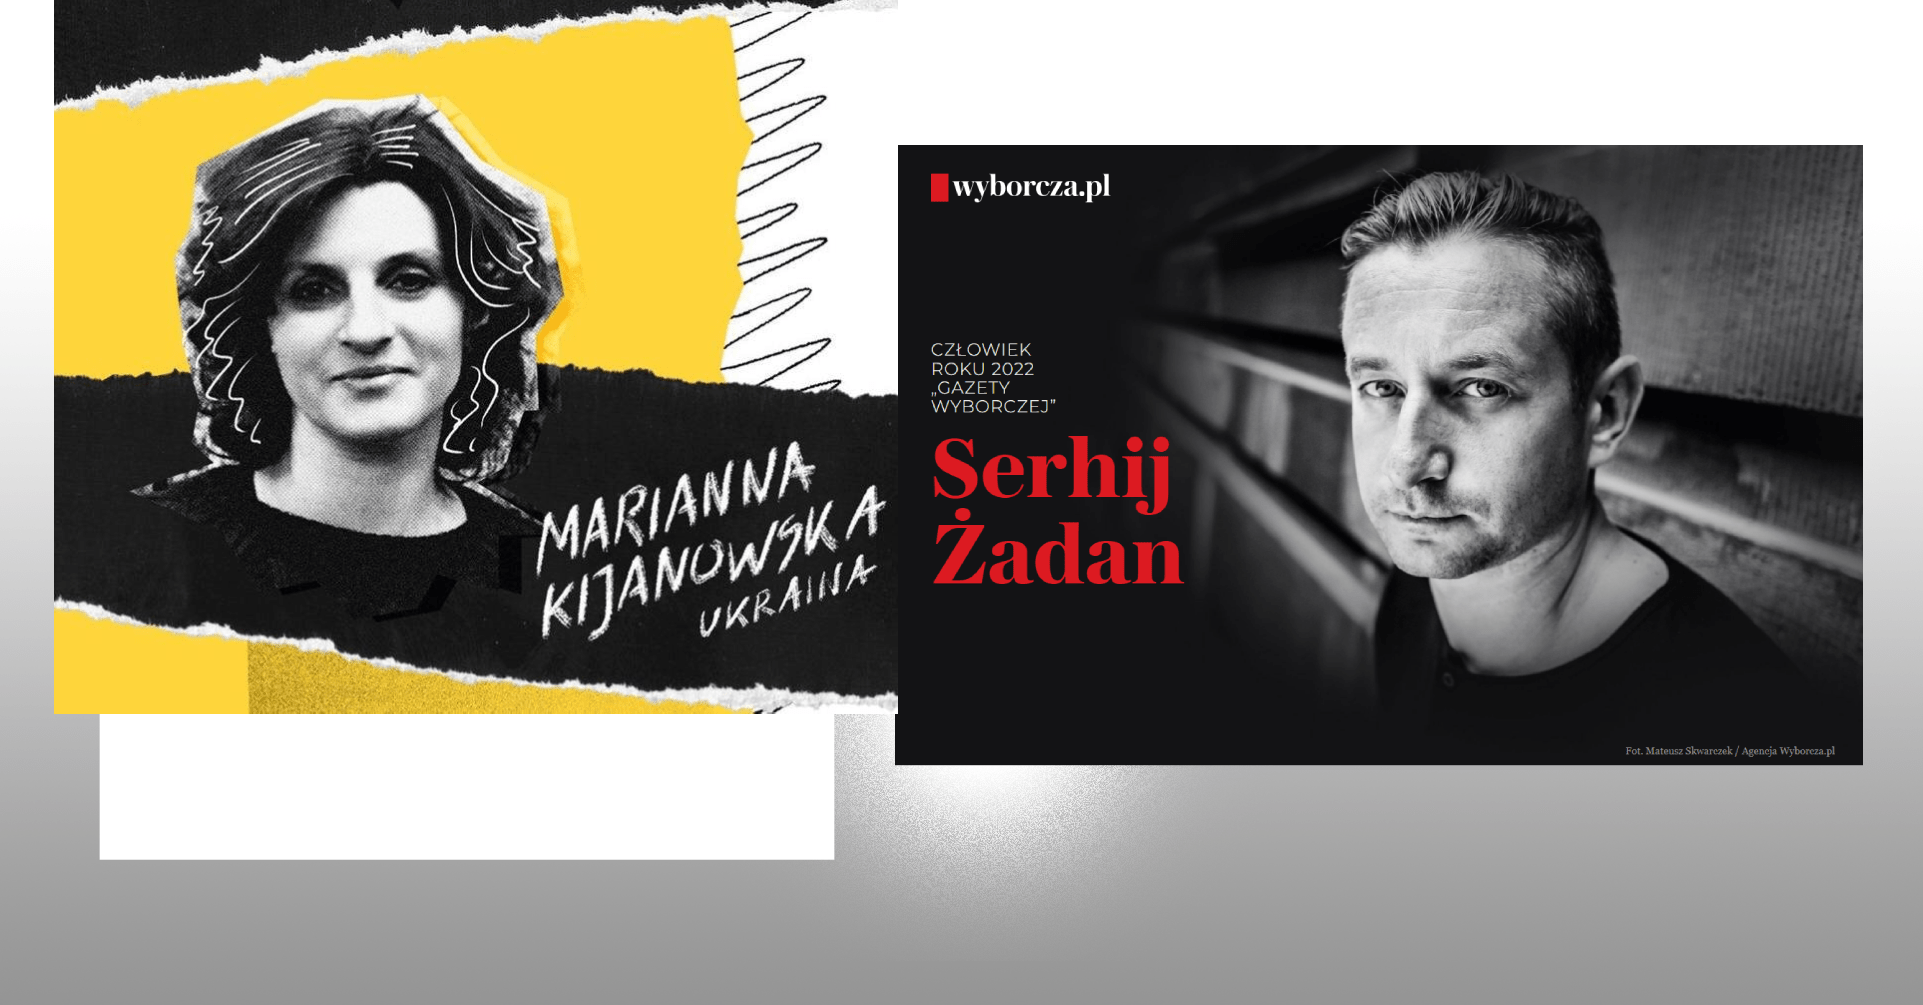 zhadan kiianovska cover - Польські нагороди українським авторам: Поетка свободи та Людина року